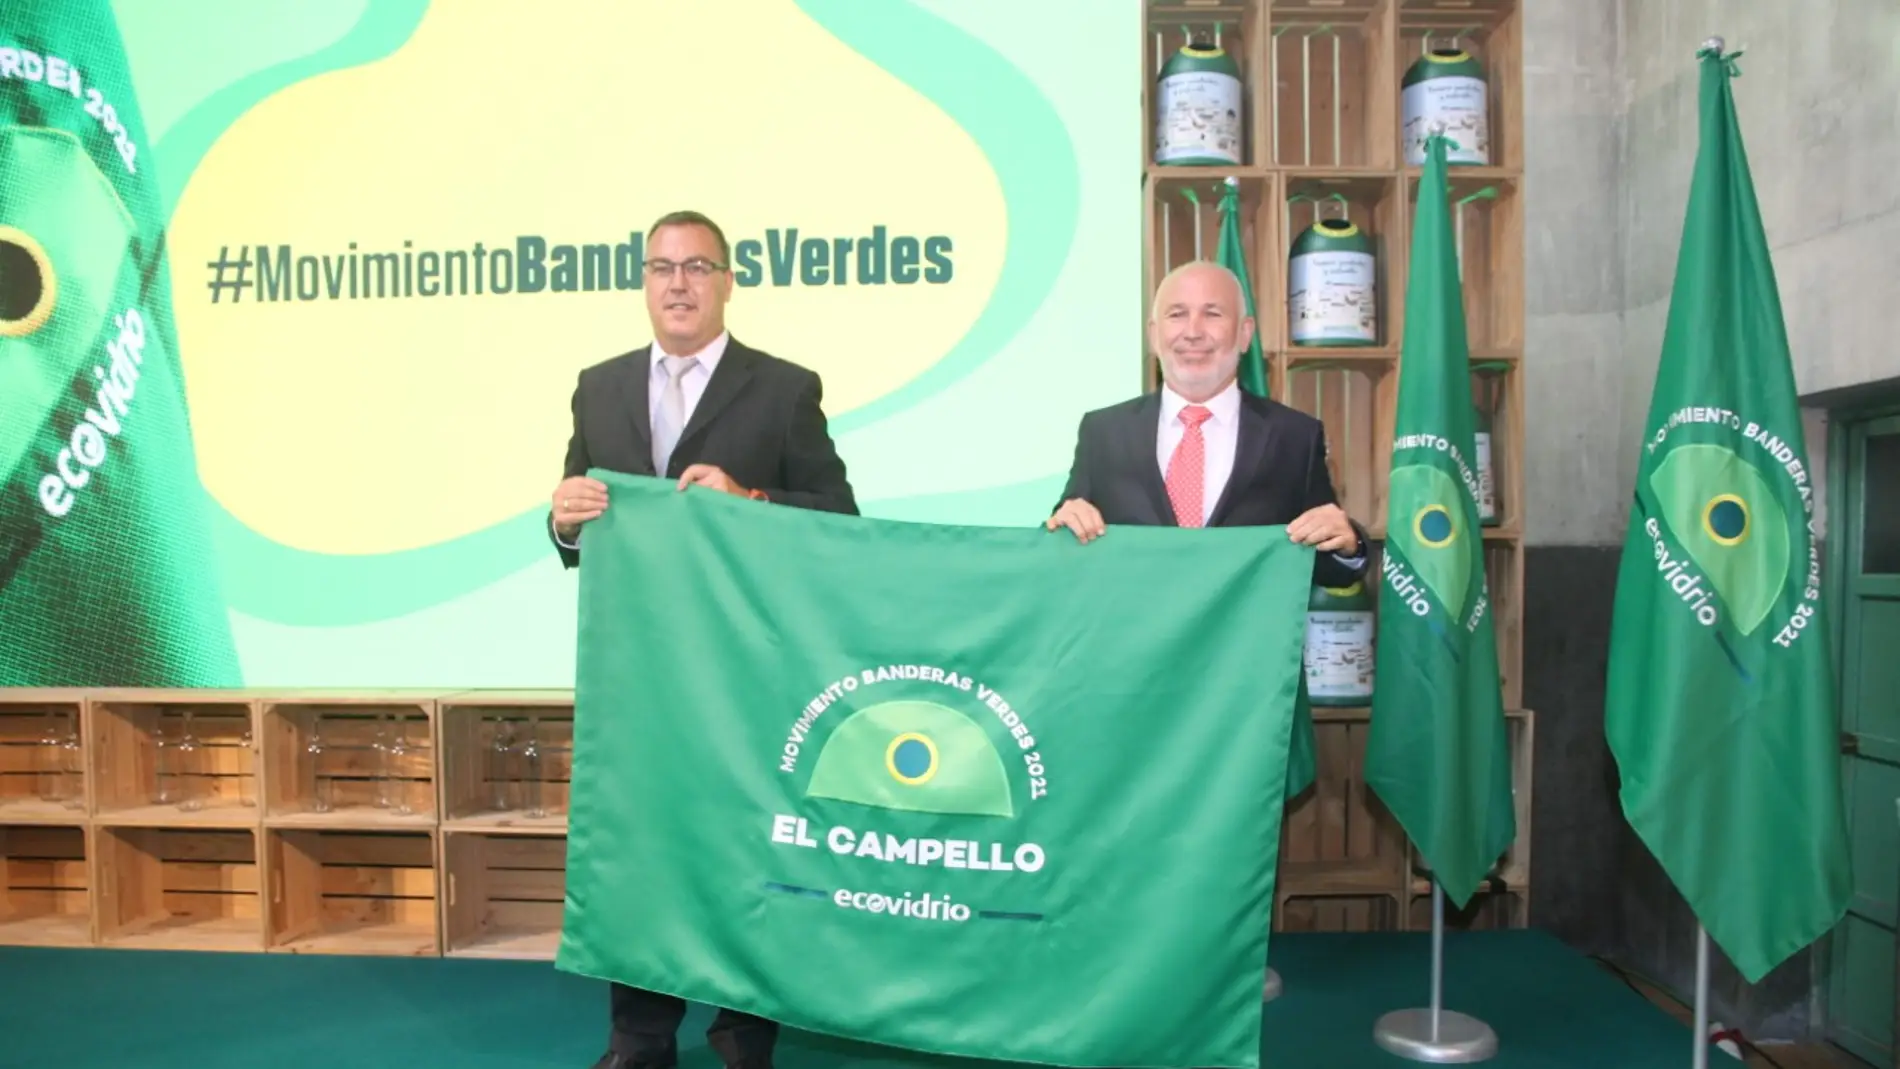 La 'bandera verde' de Ecovidrio que distingue a El Campello 